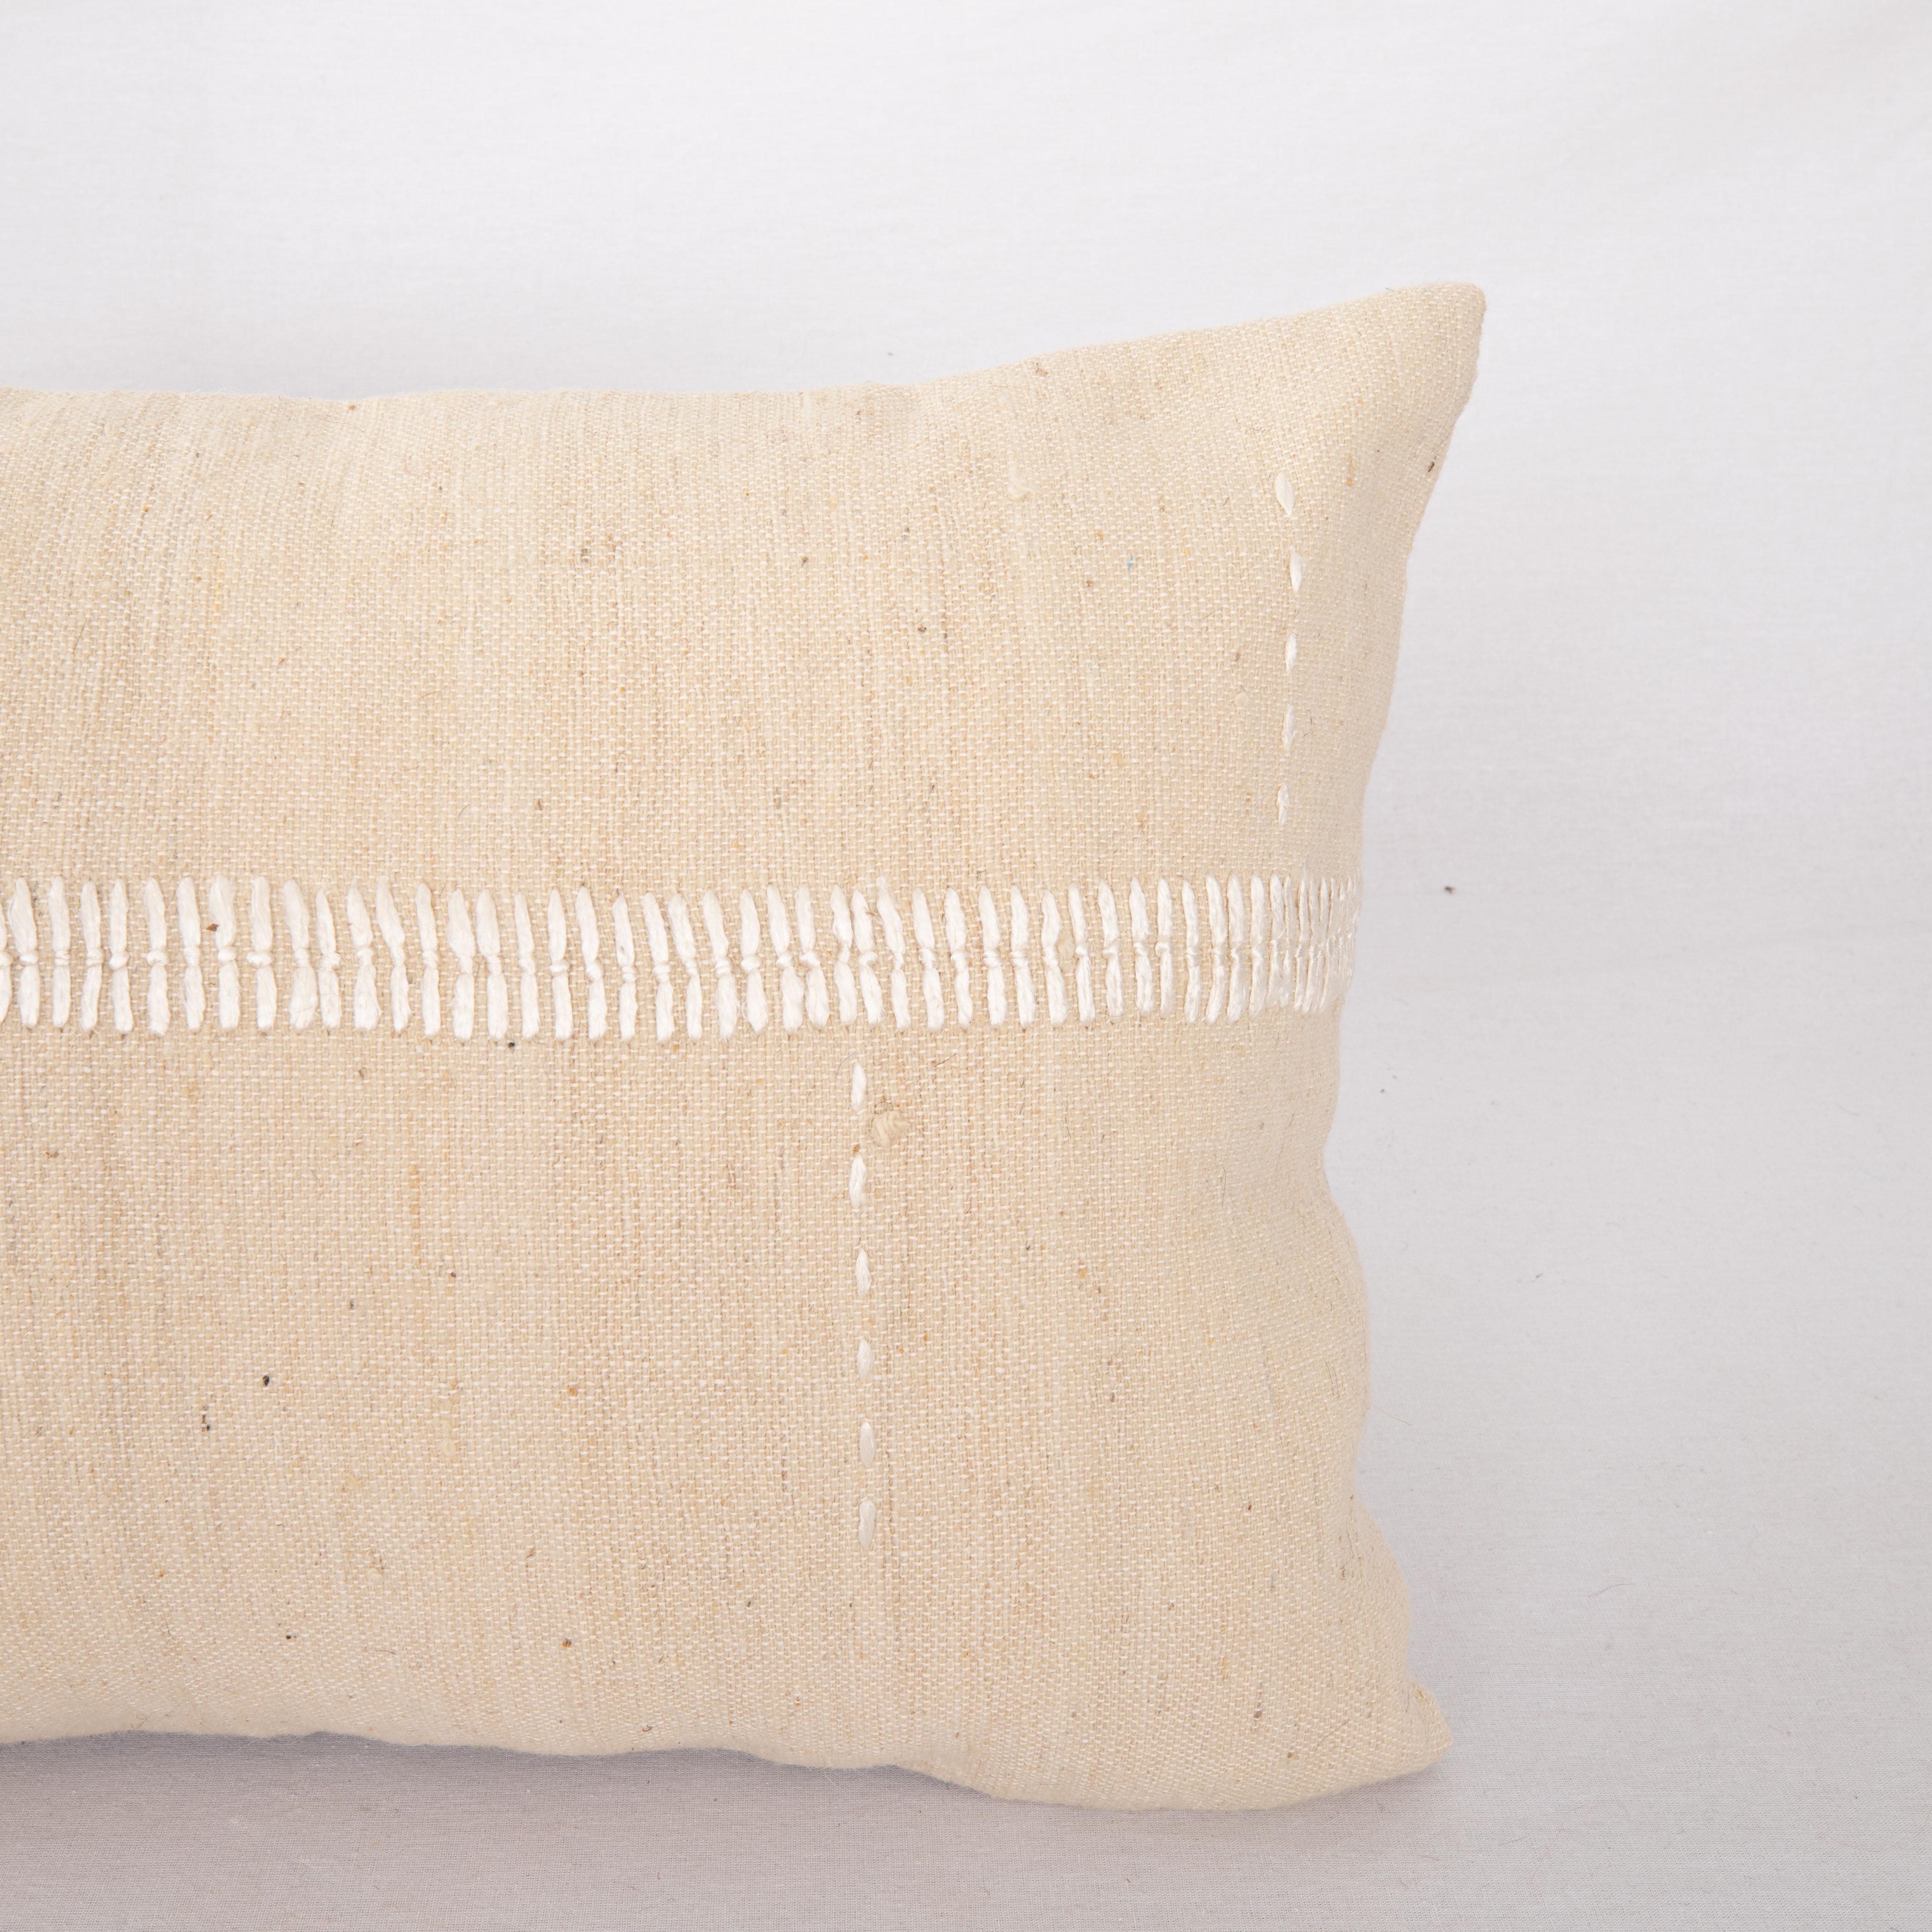 Turc Mid 20th C. Pillow Cover Made from Vintage Anatolian Covers (housse de coussin du milieu du 20e siècle fabriquée à partir de couvertures anatoliennes d'époque) en vente